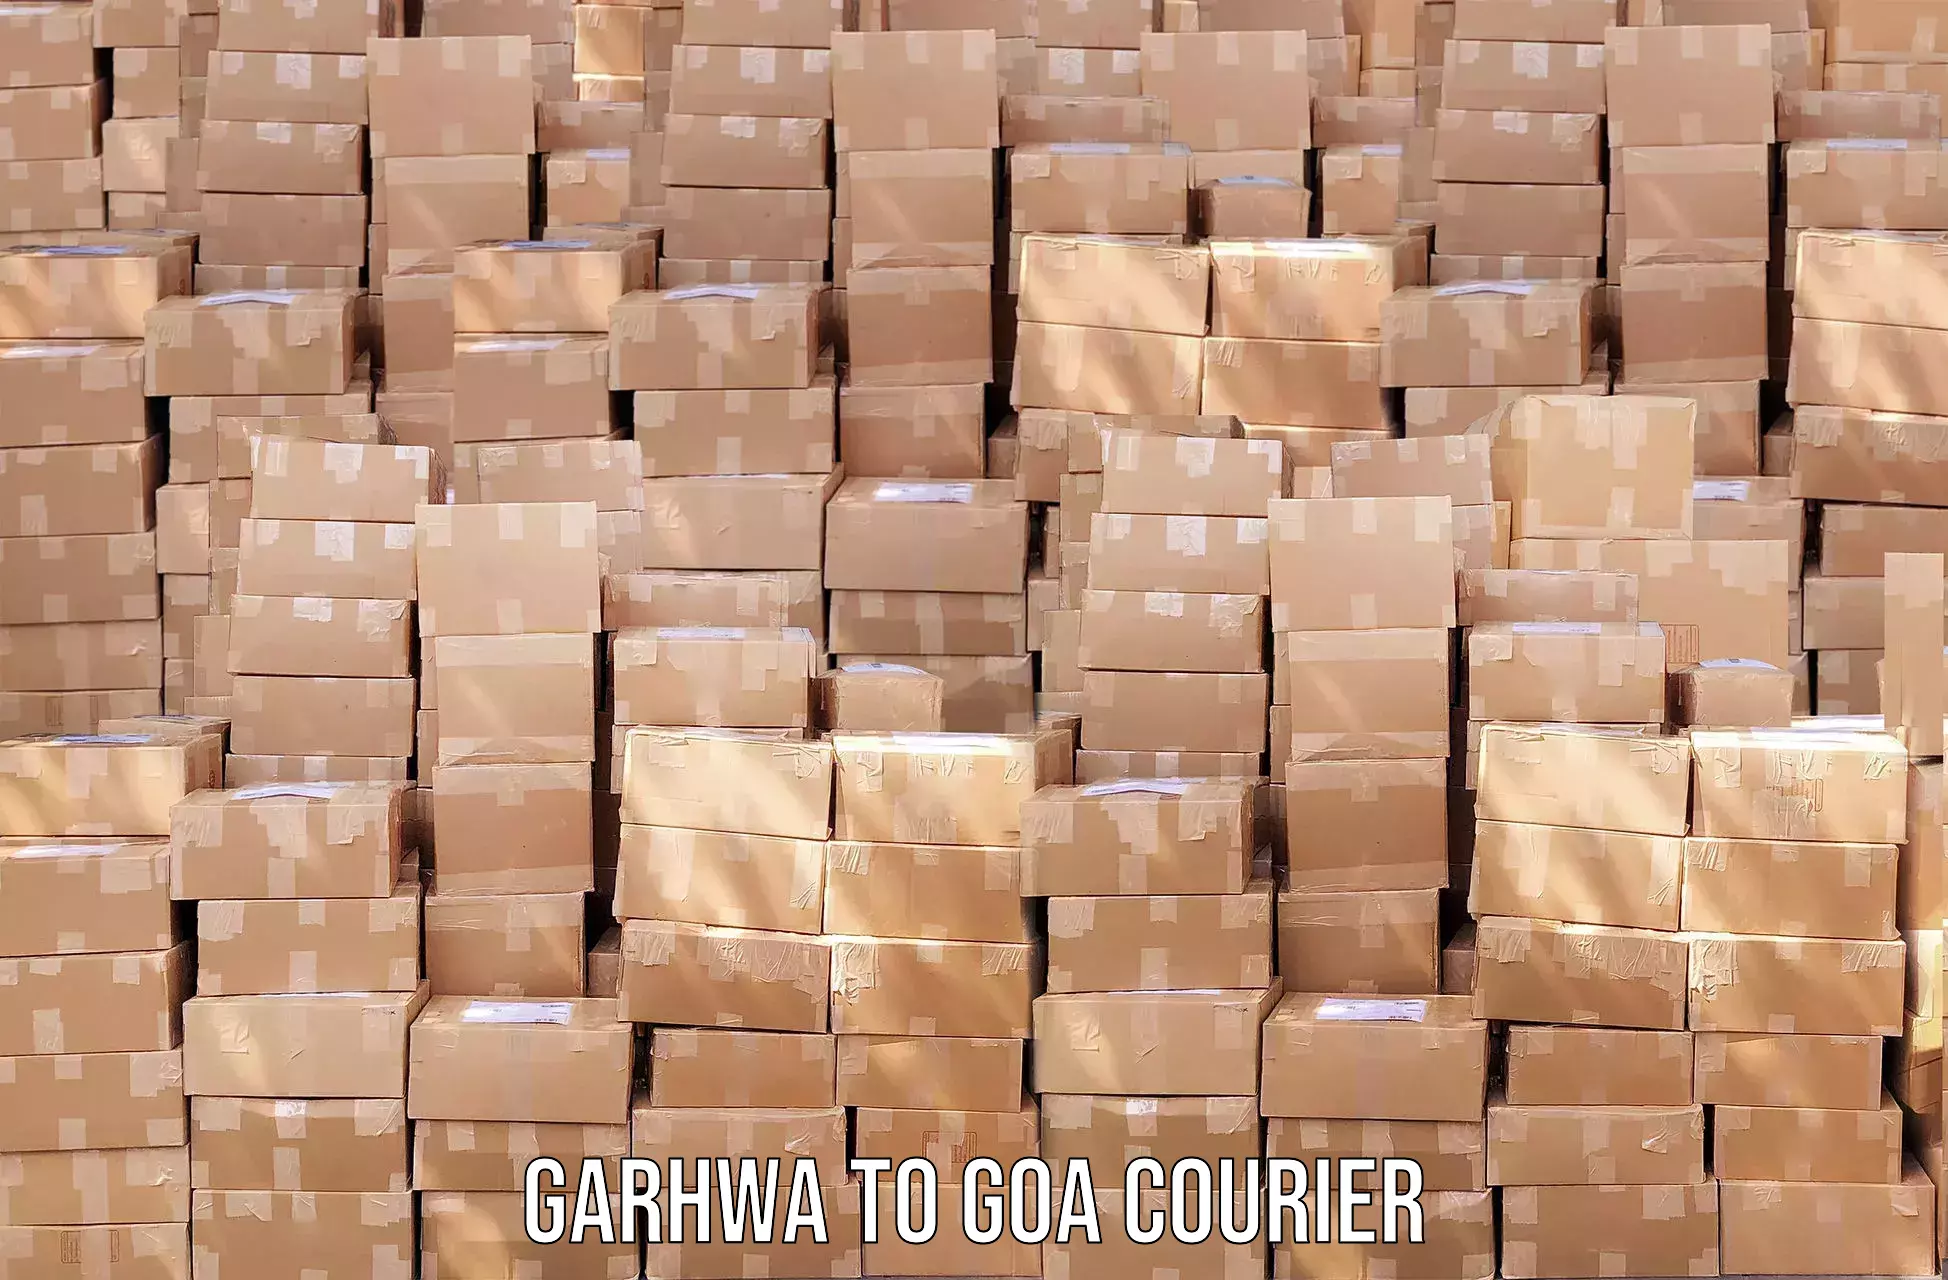 Efficient parcel service Garhwa to Goa